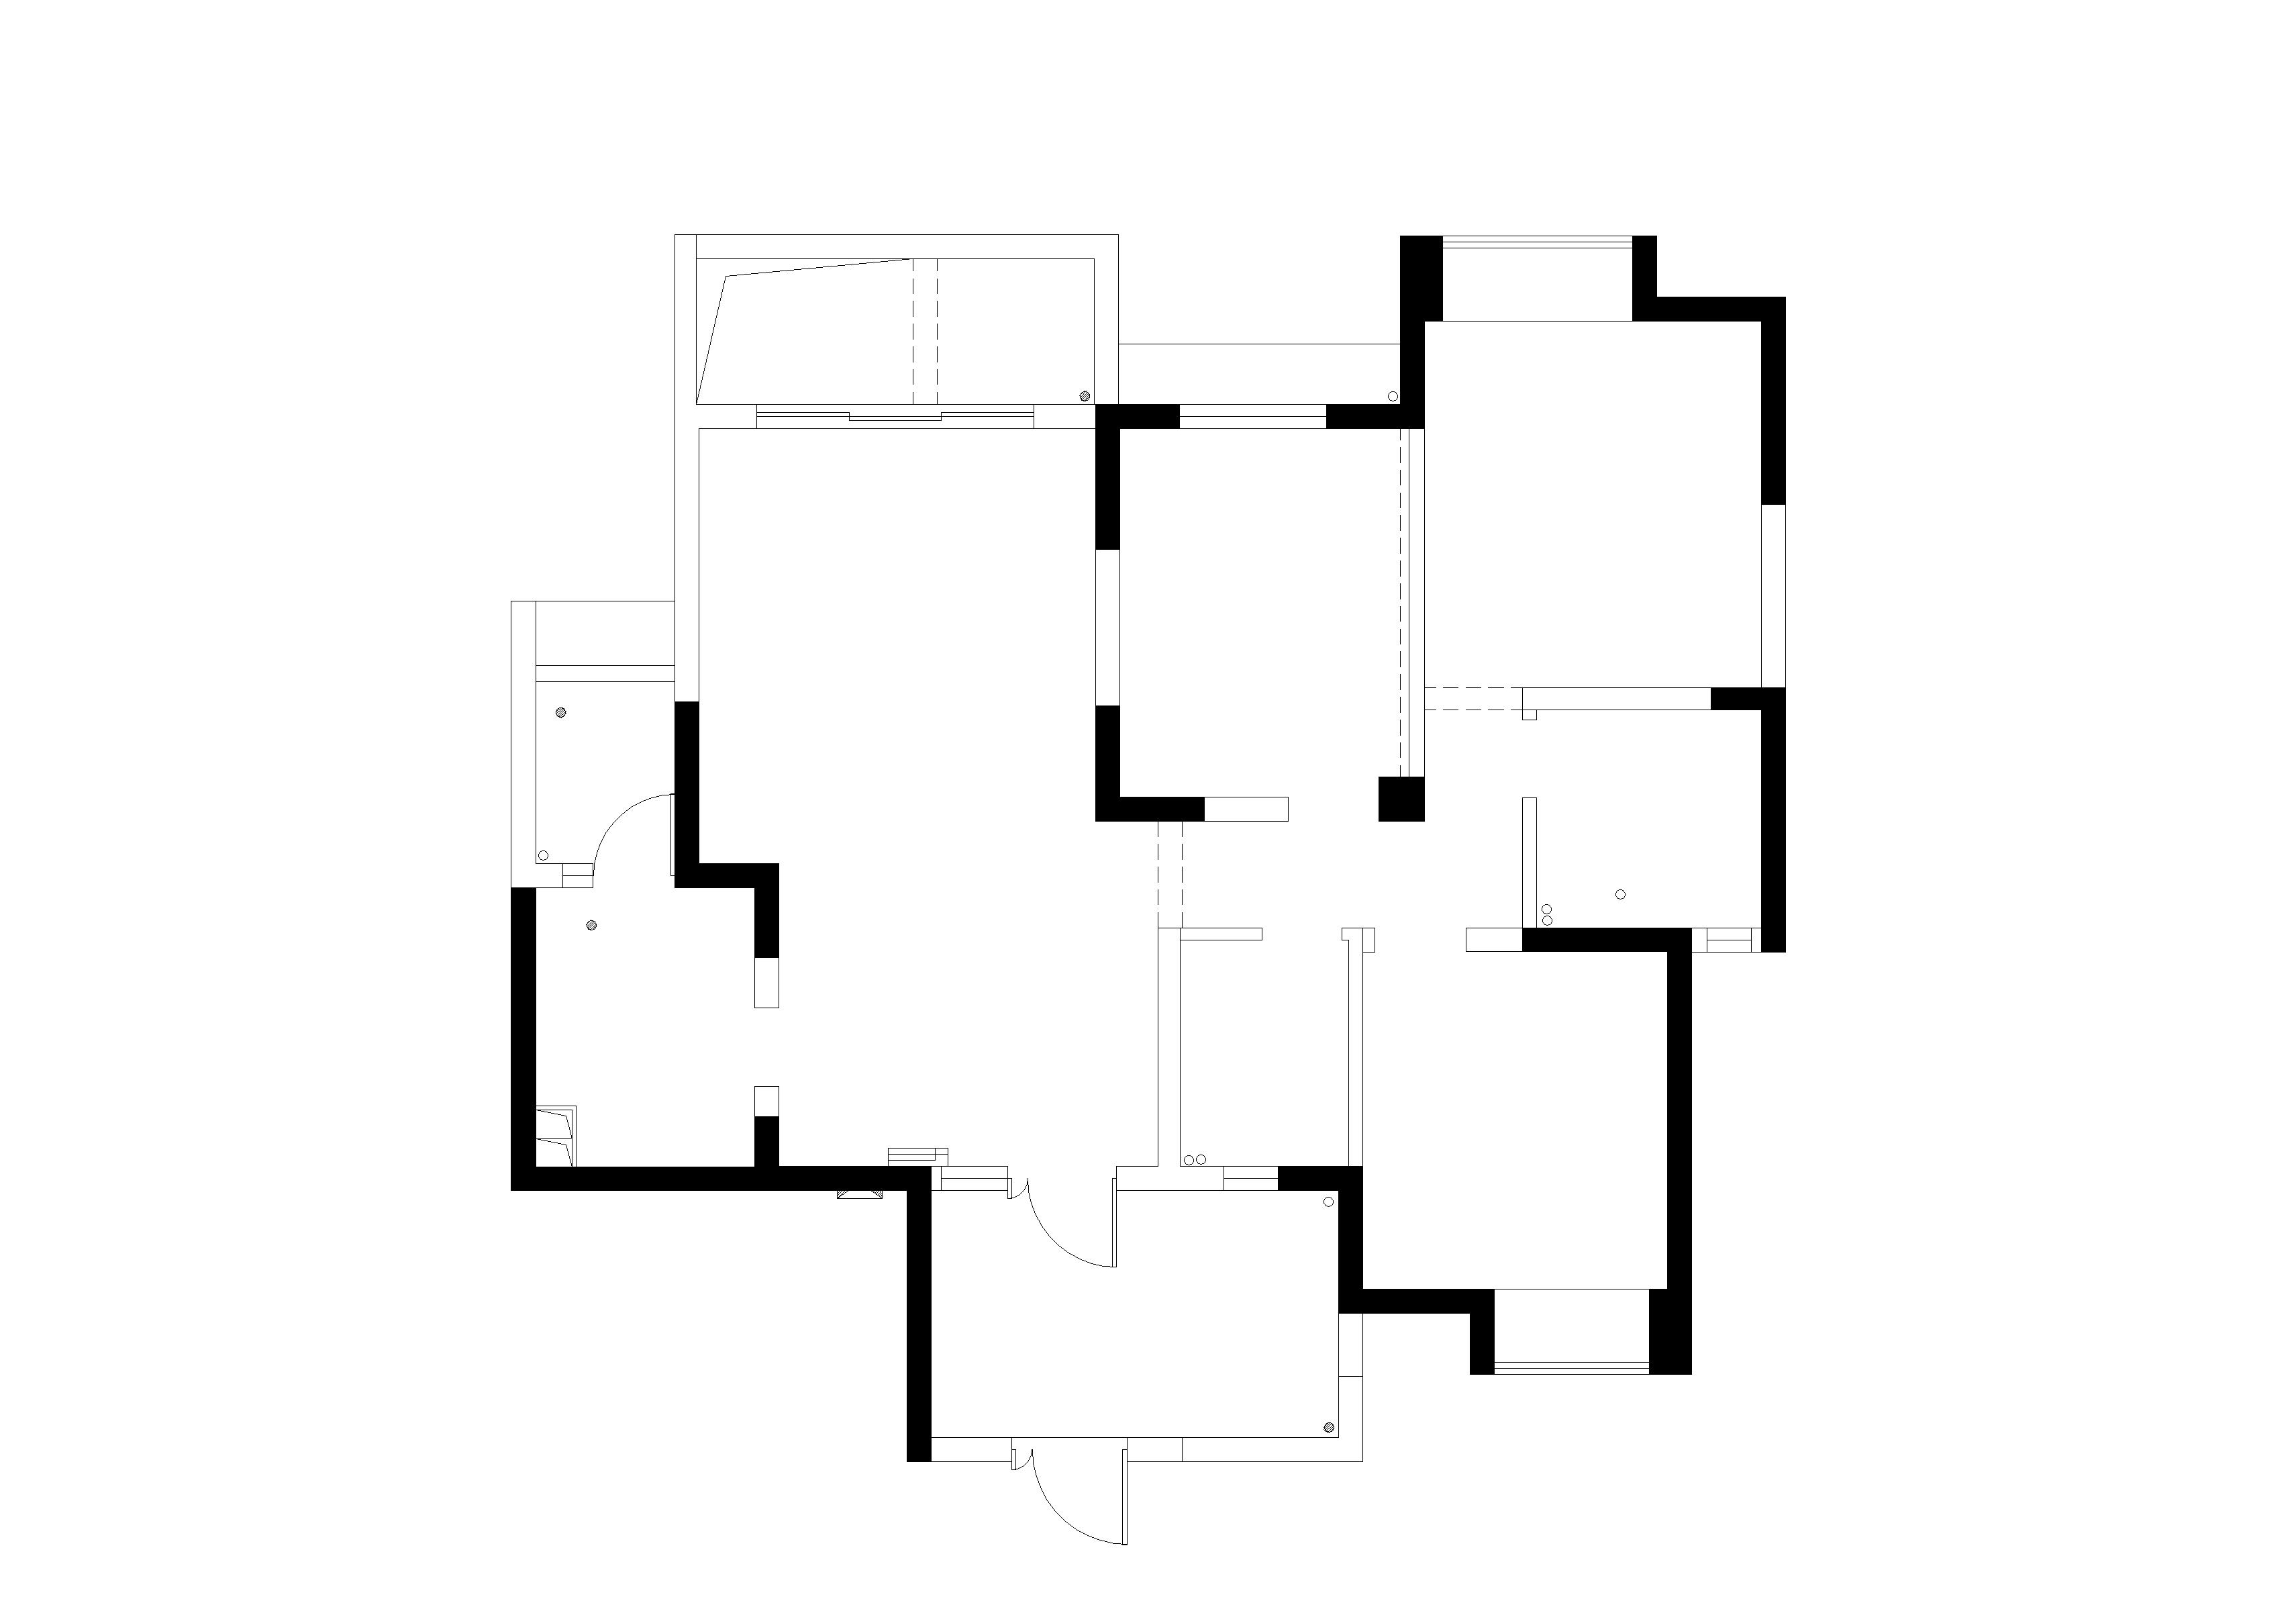 MOON HOUSE原始图.jpg